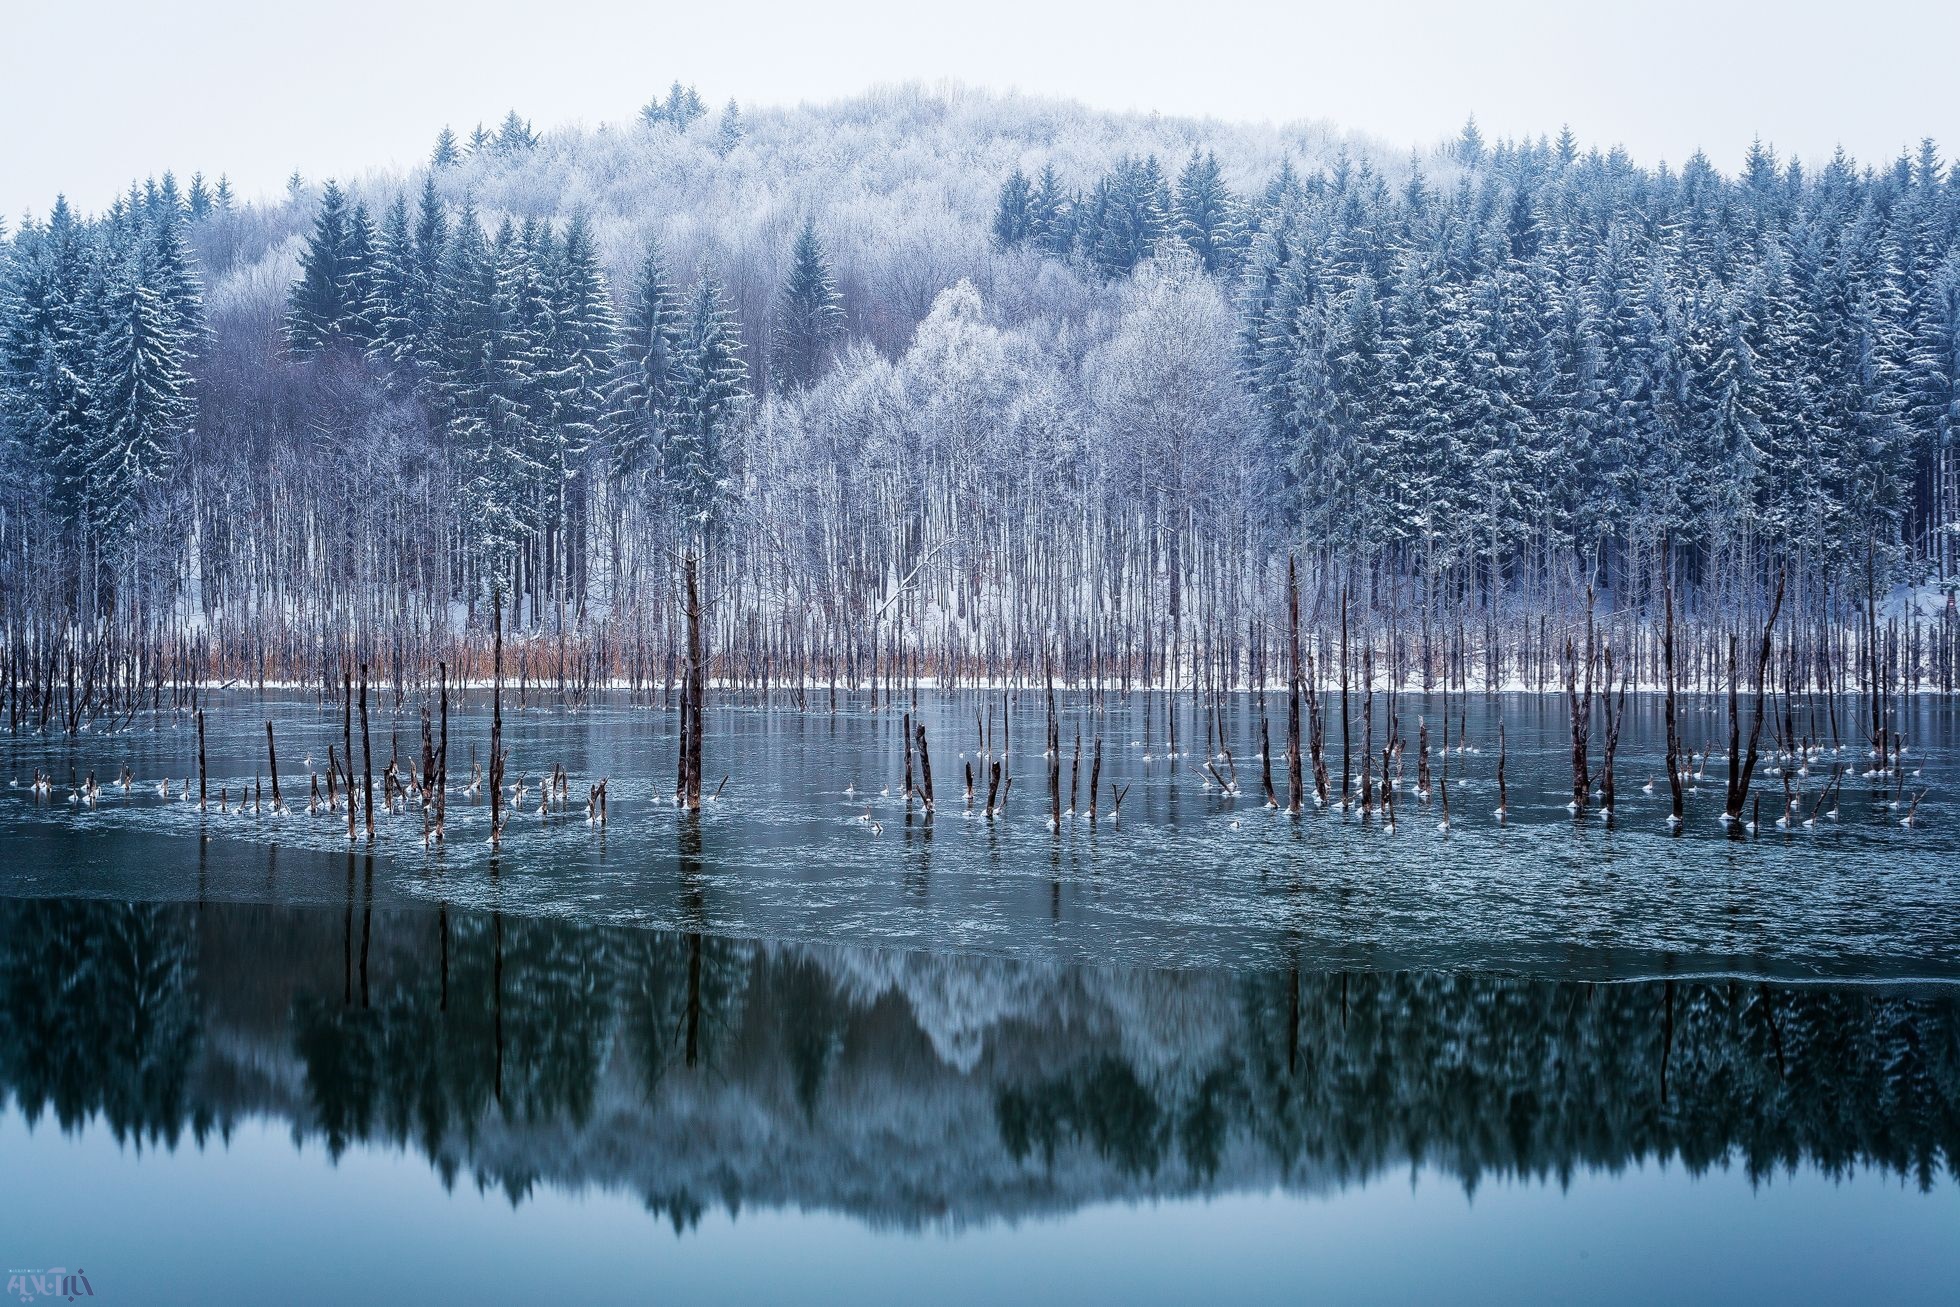 عکس زیبای یک روز برفی در جنگل/ عکس روز نشنال جئوگرافیک